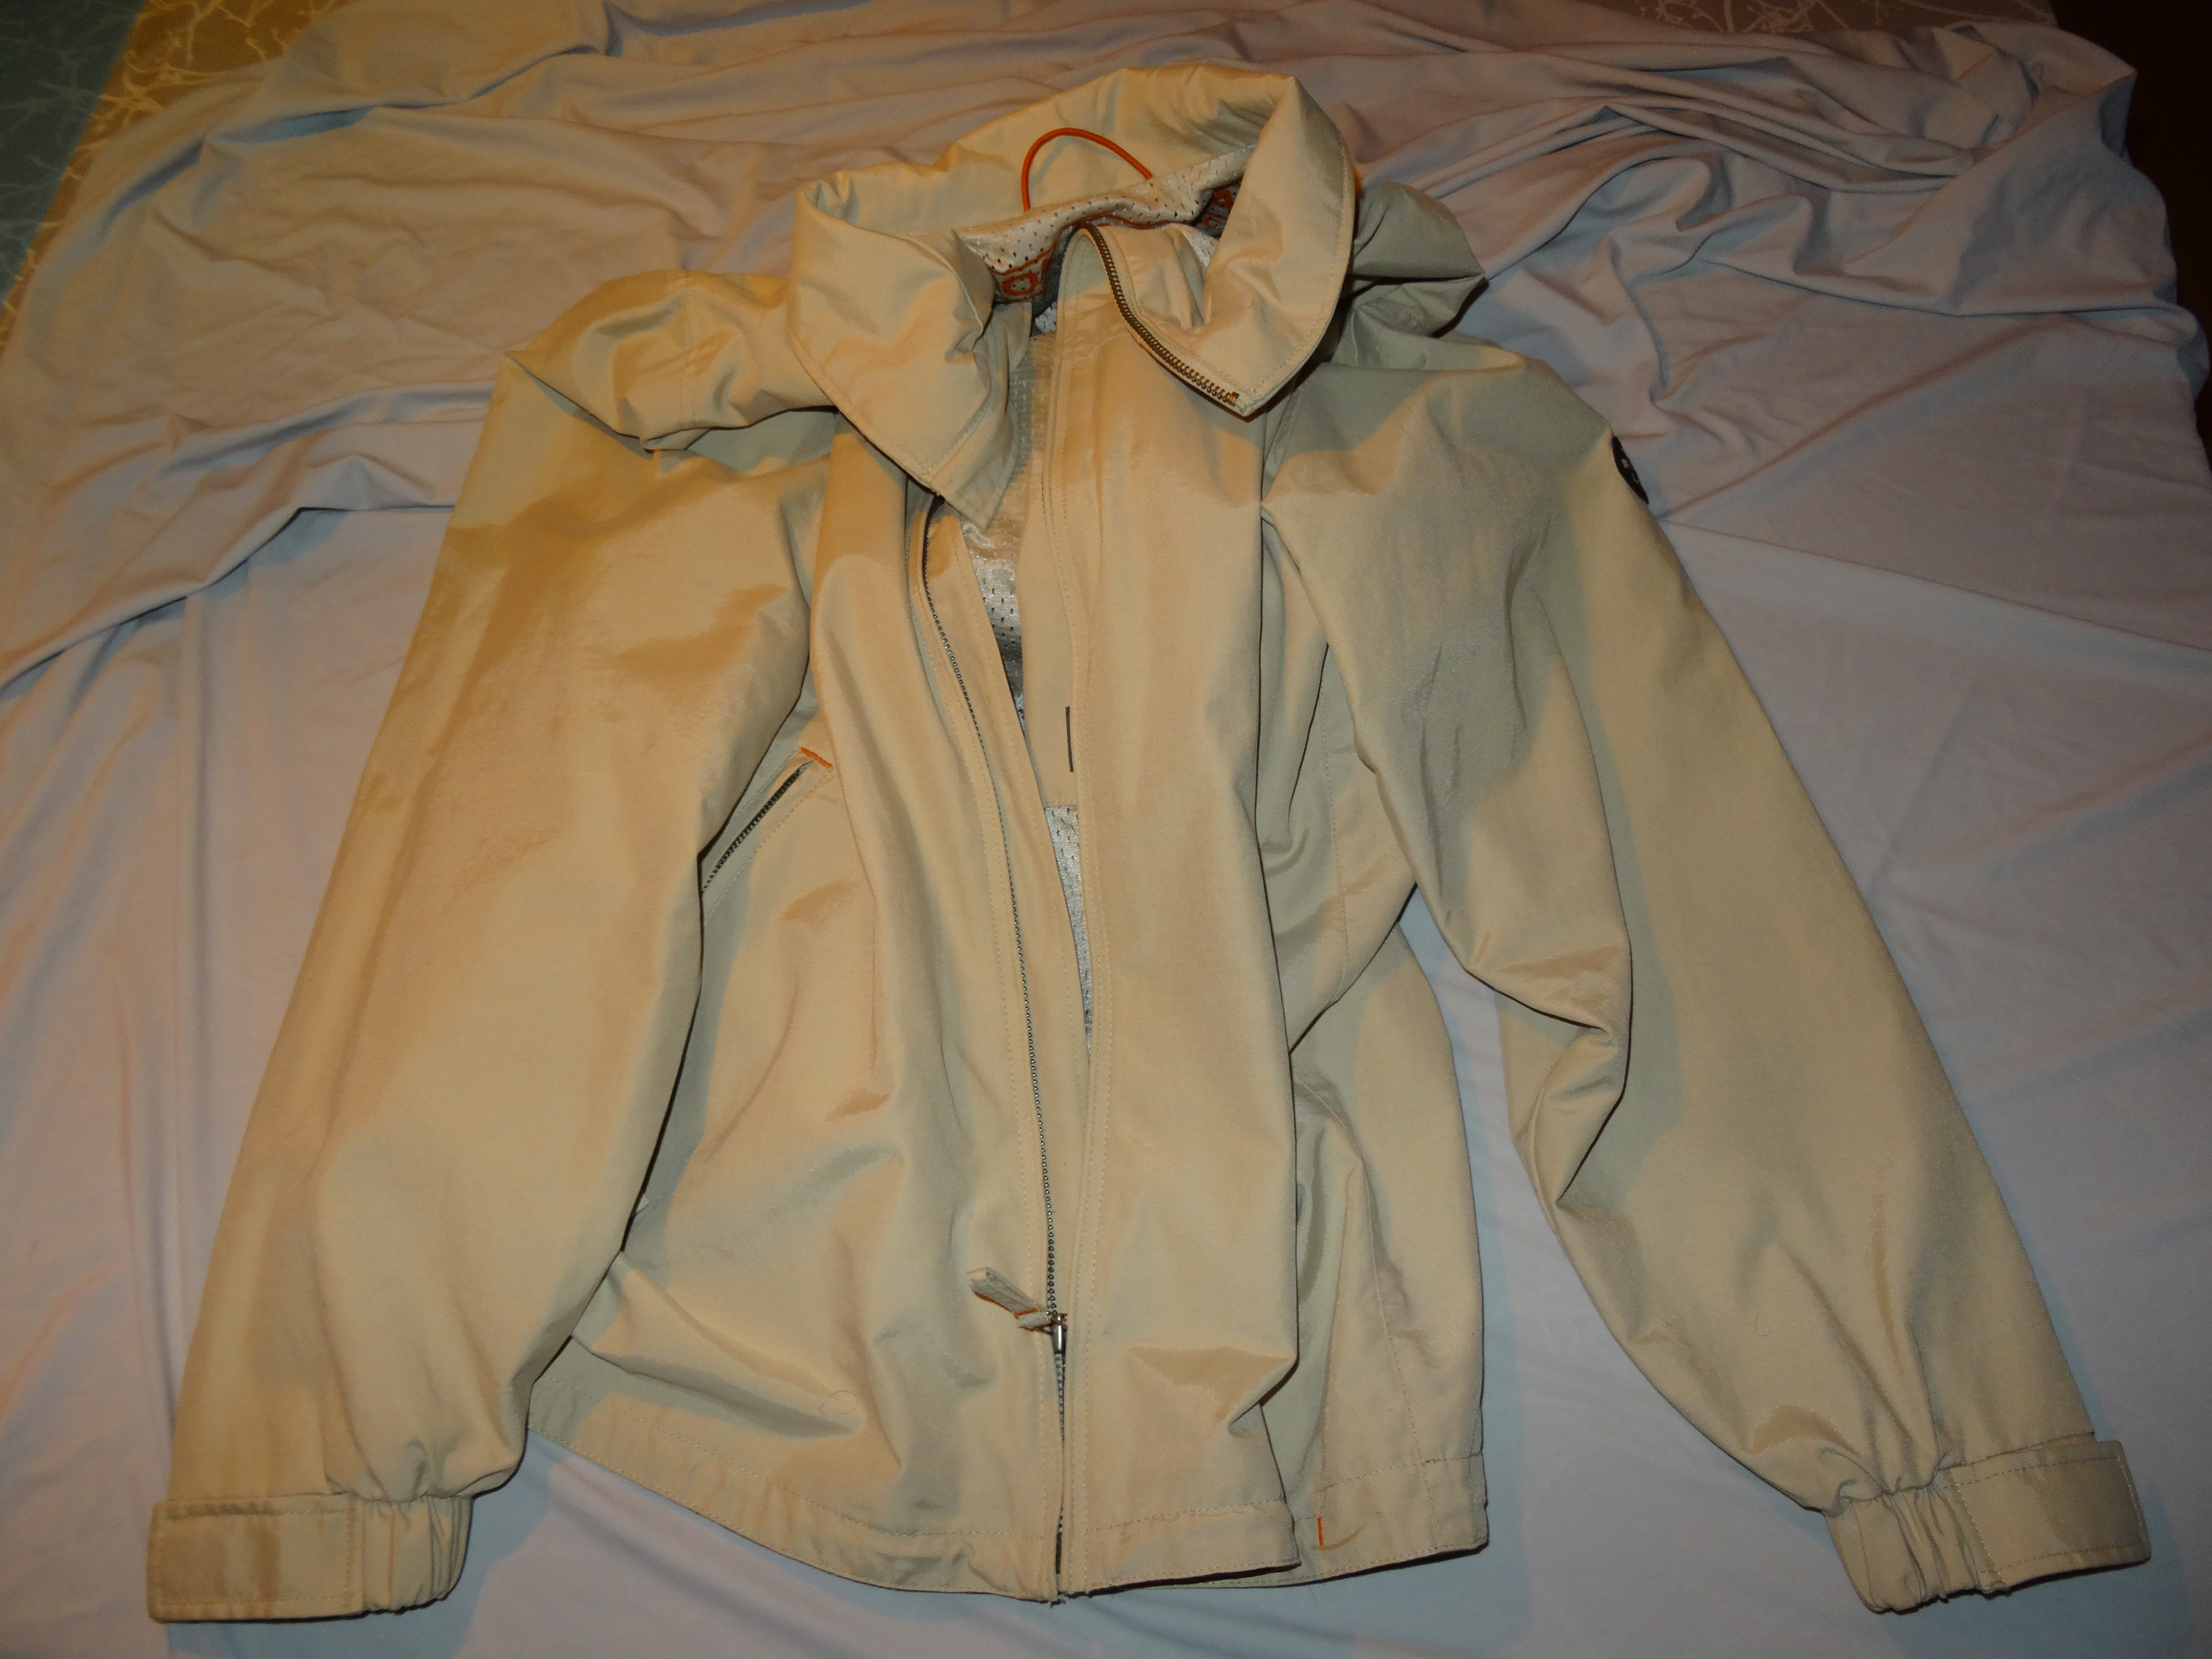 Syr ny lynlås i jakker og repation af jakker.